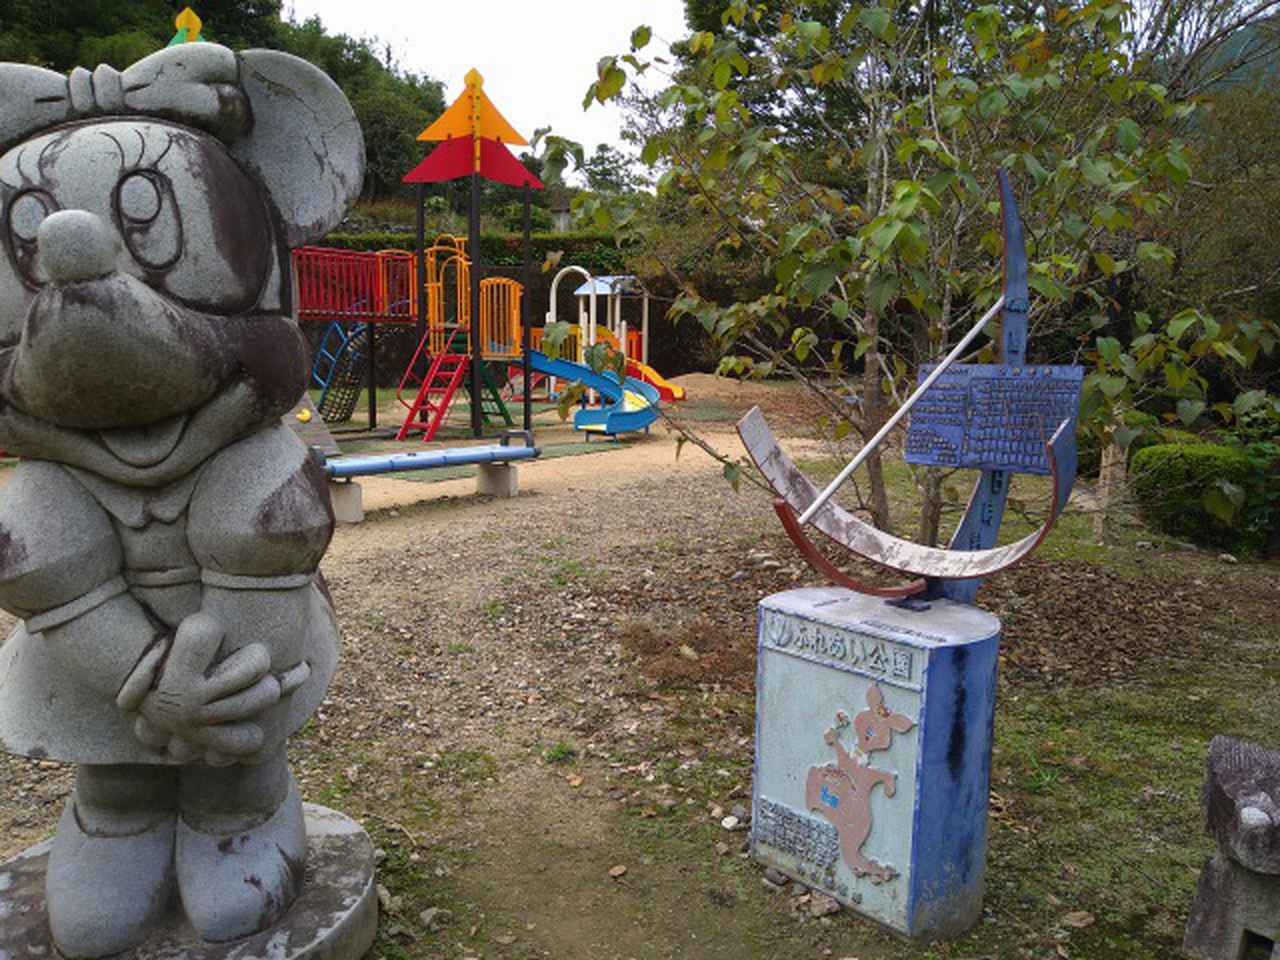 画像: 筆者撮影「小さな子供も楽しめる公園」